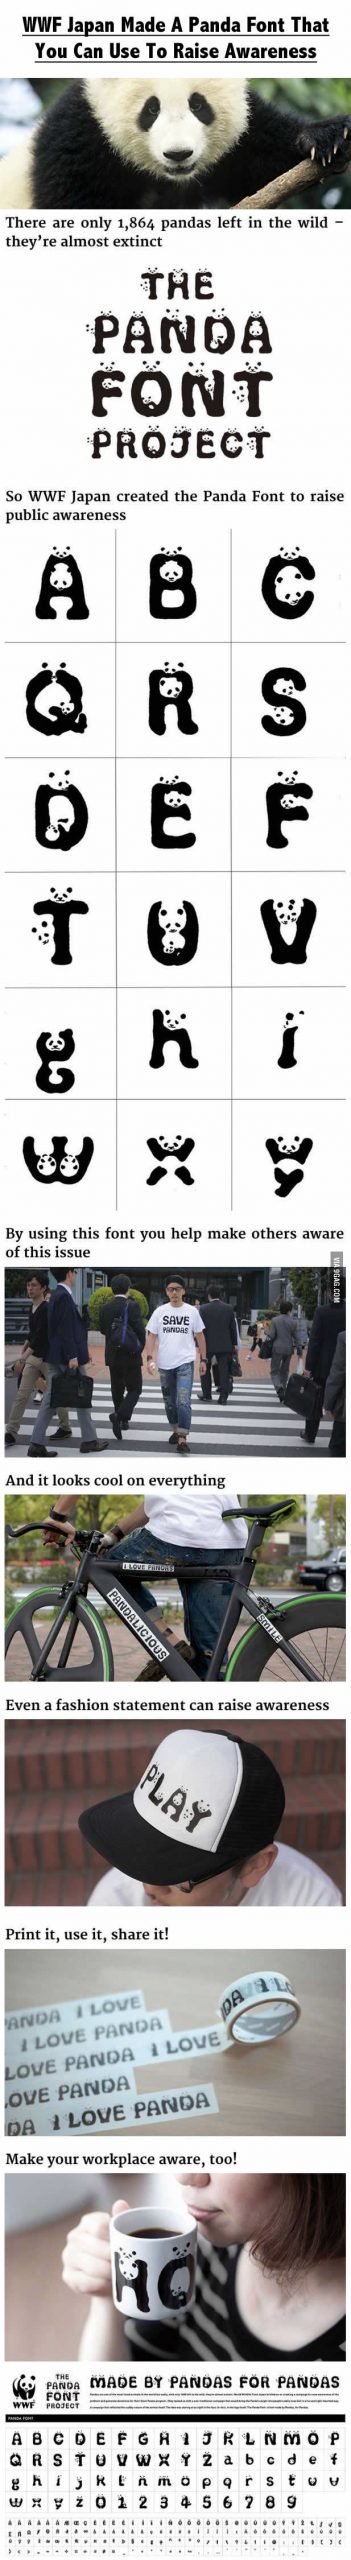 WWF Japan har lavet en panda font for at skabe opmærksomhed